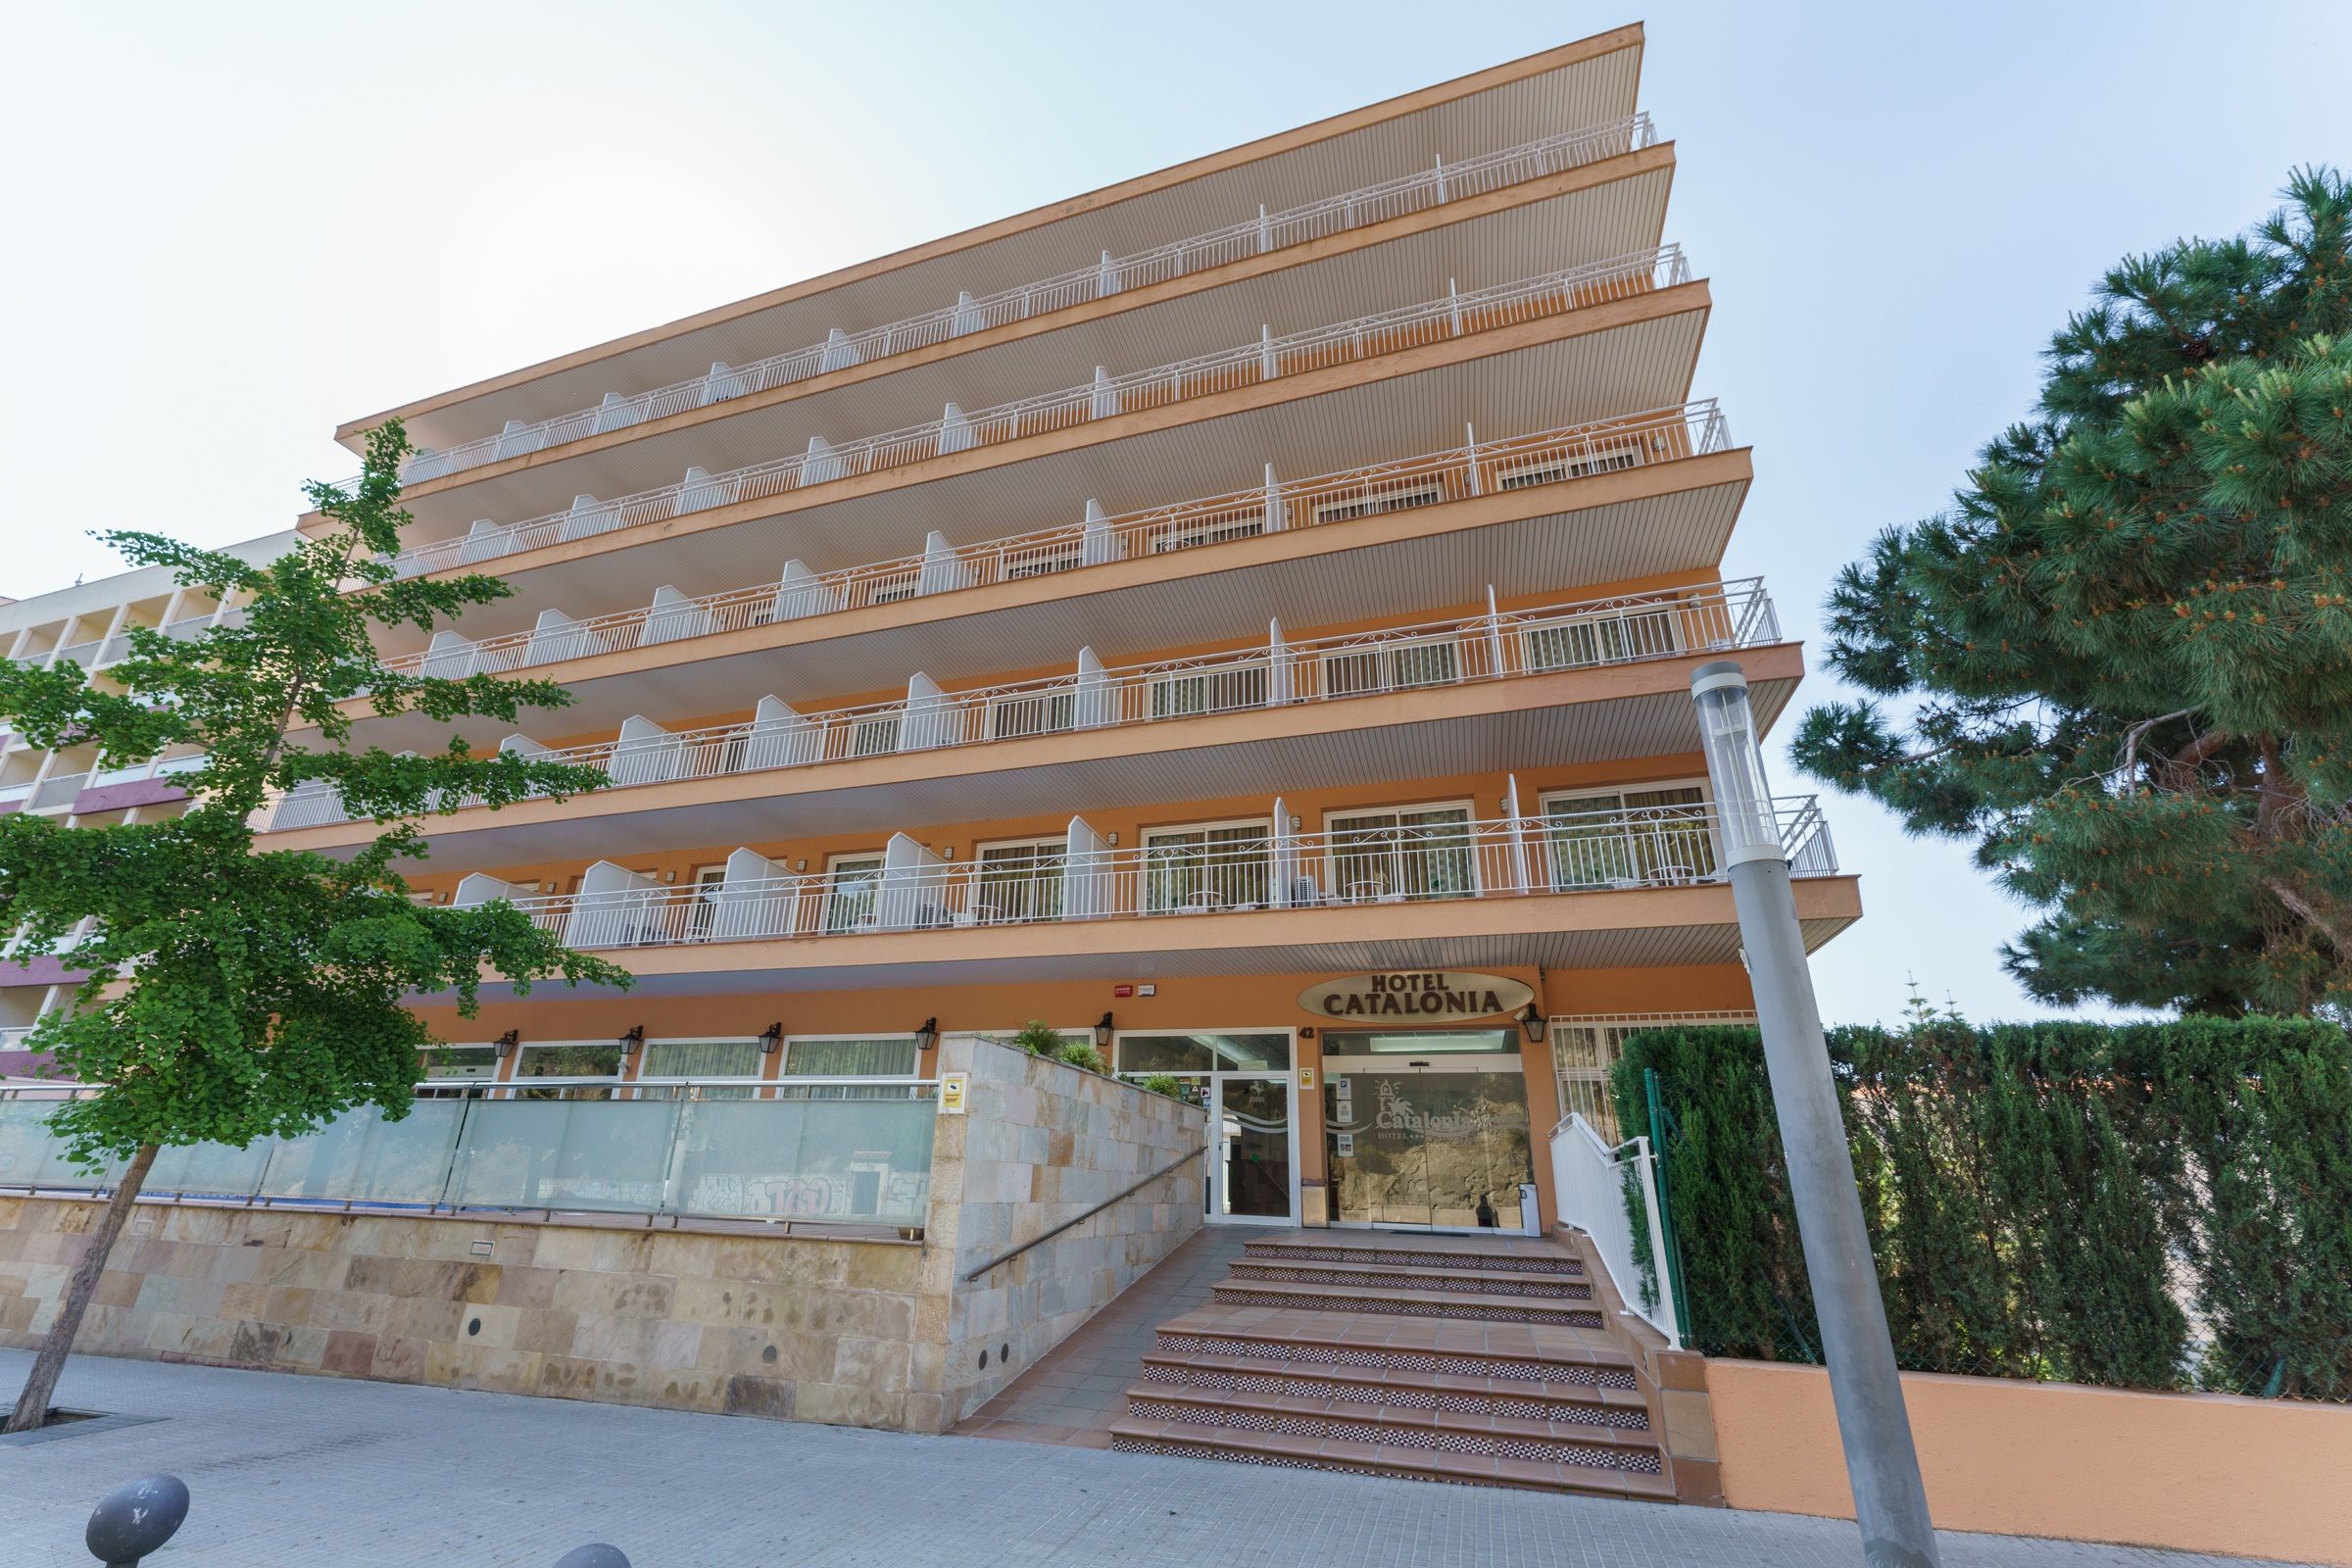 Hotel Catalonia - Calella